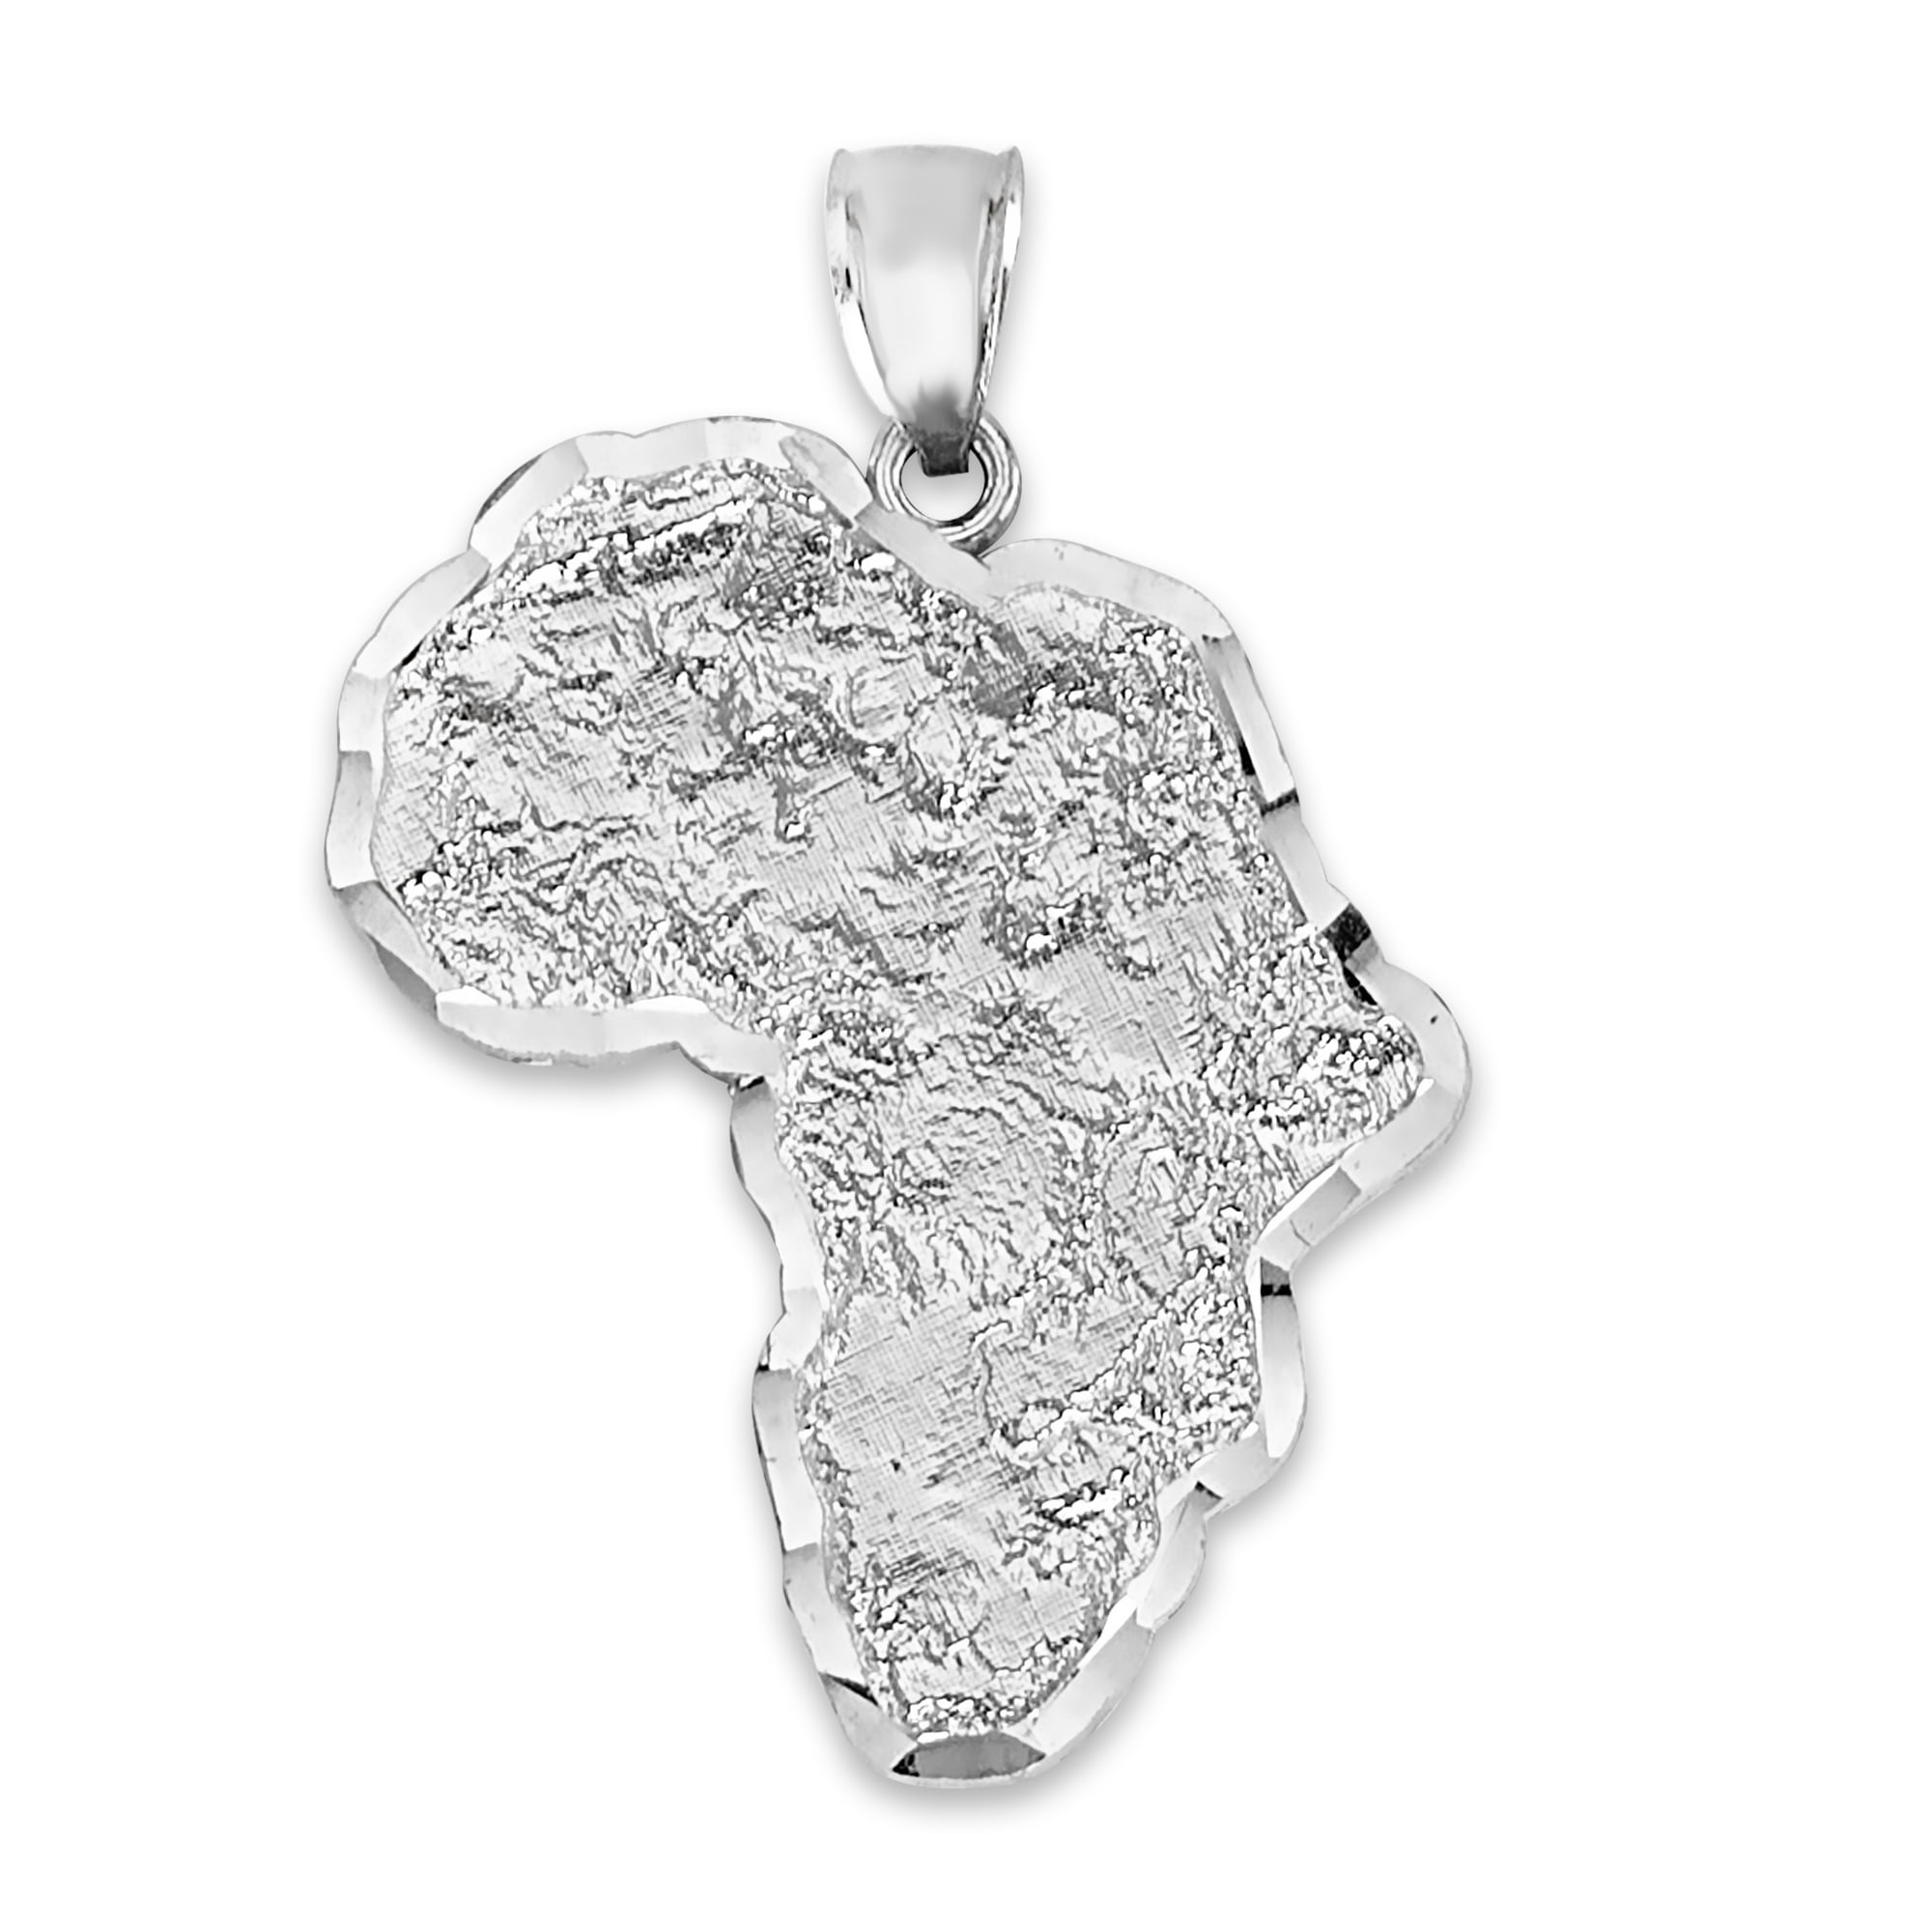 Marcus Garvey Africa Map Necklace - VP Reggae